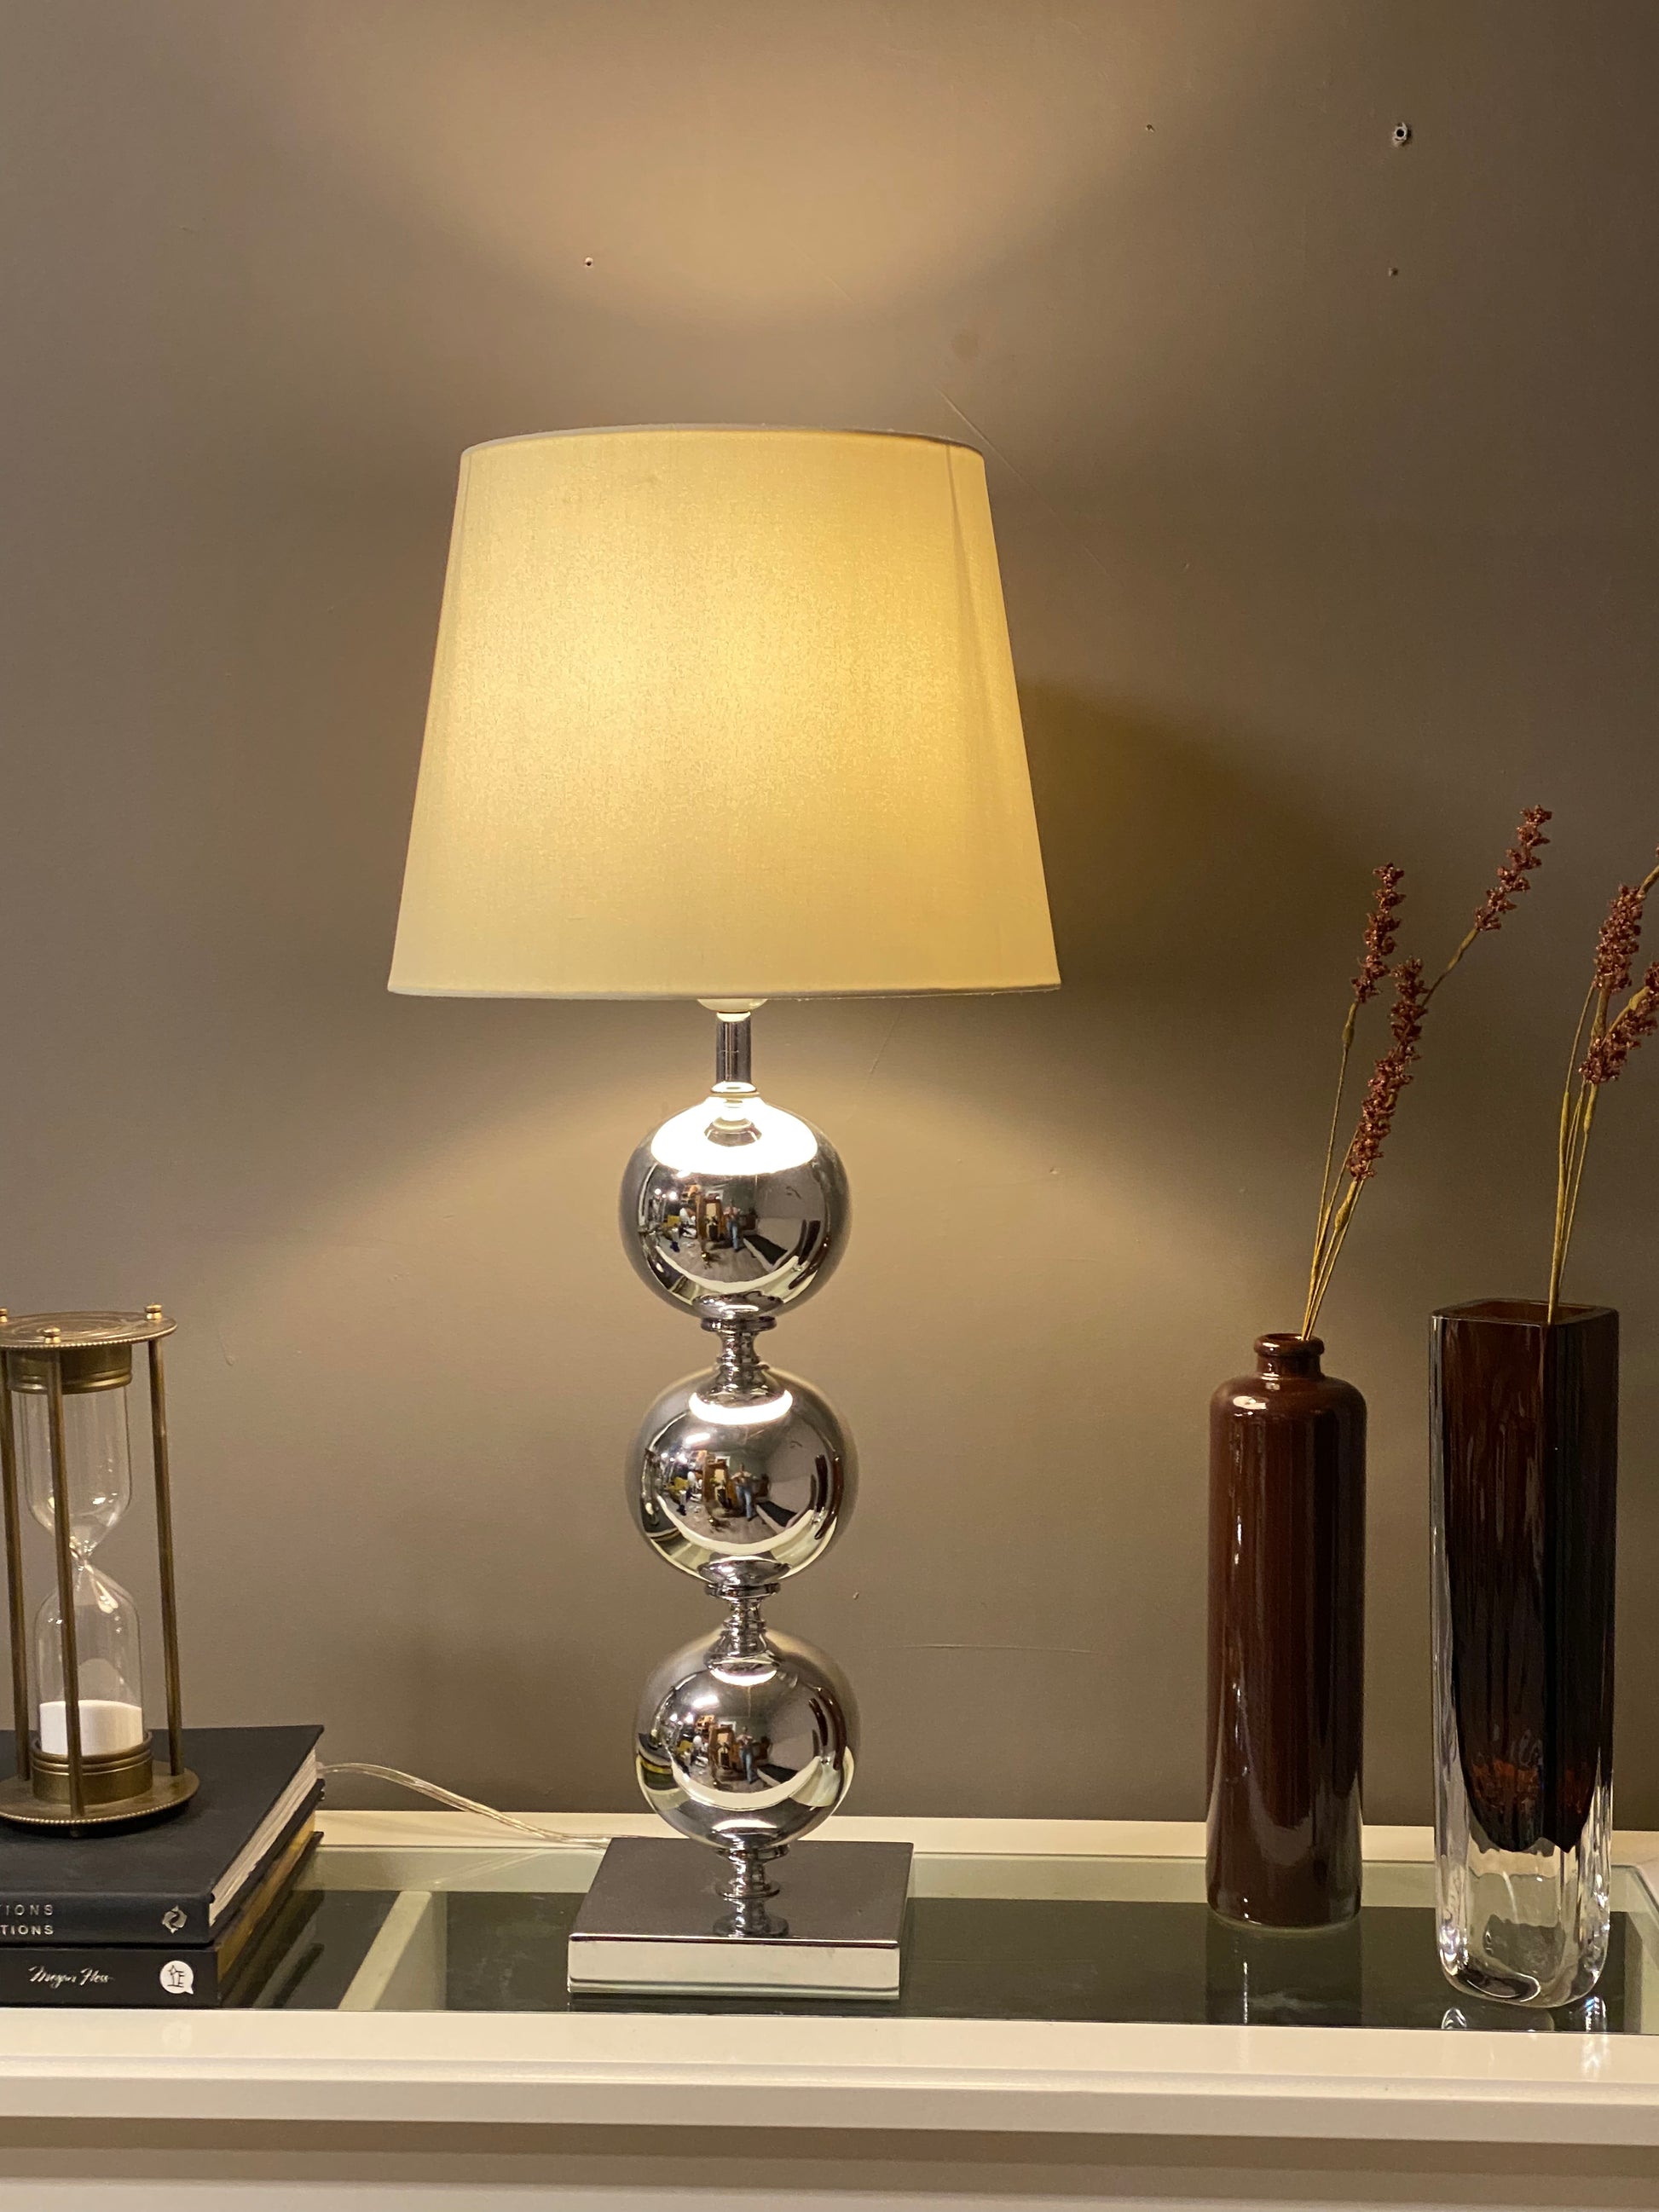 Elegant høy bordlampe - Kvalitetsbrukt Møbel fra Hjembruket på Hjembruket